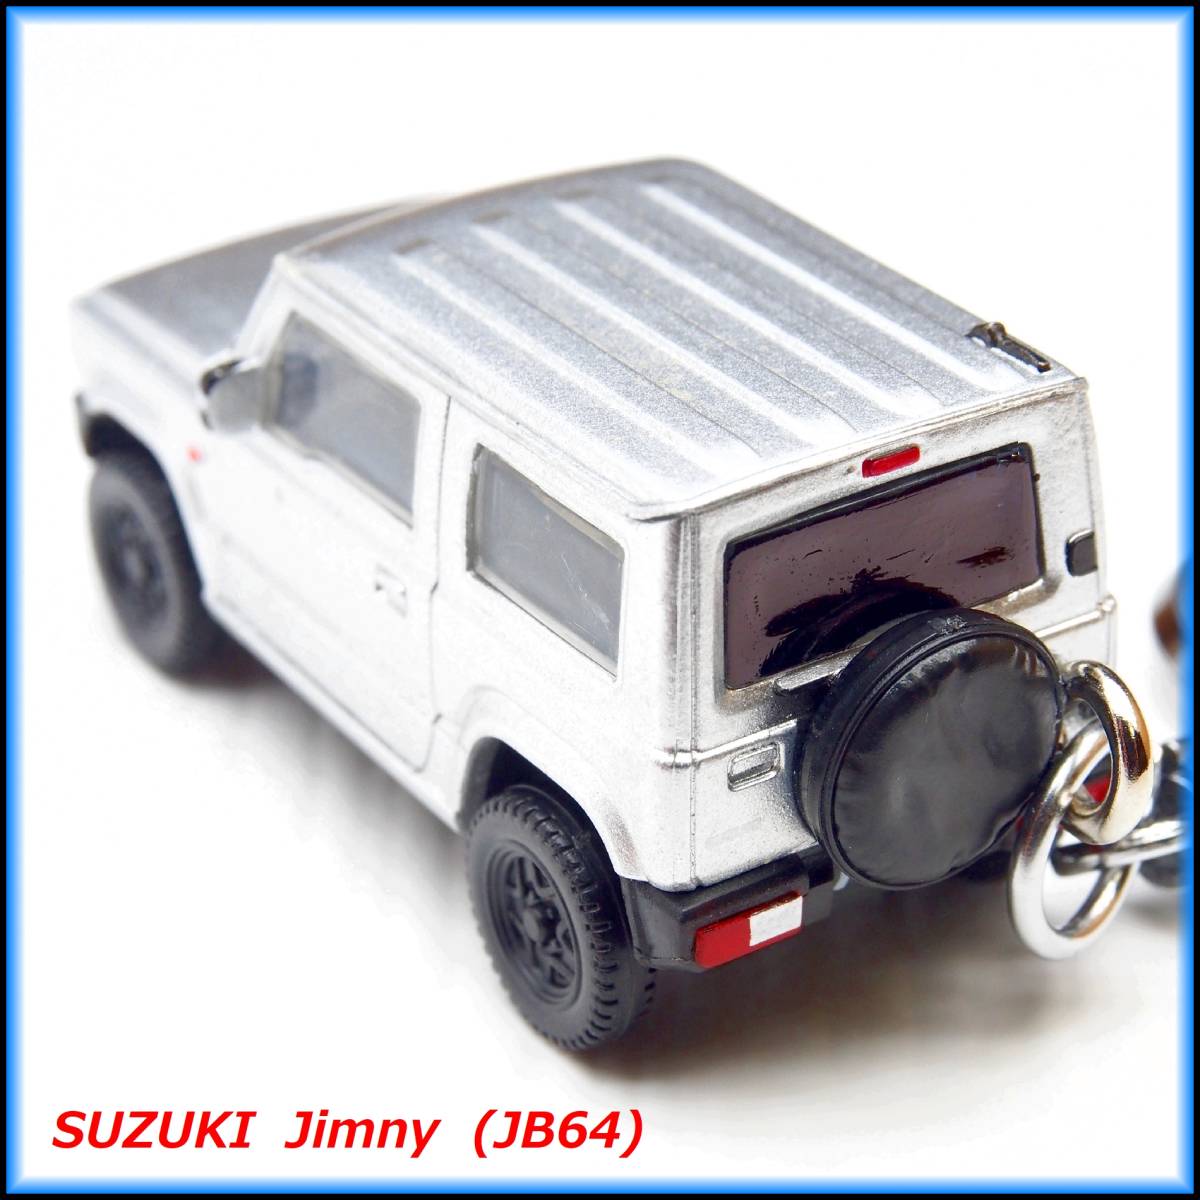  Suzuki Jimny JB64 миникар ремешок брелок для ключа колесо muffler шина обвес спойлер бампер сиденье амортизатор багажник 